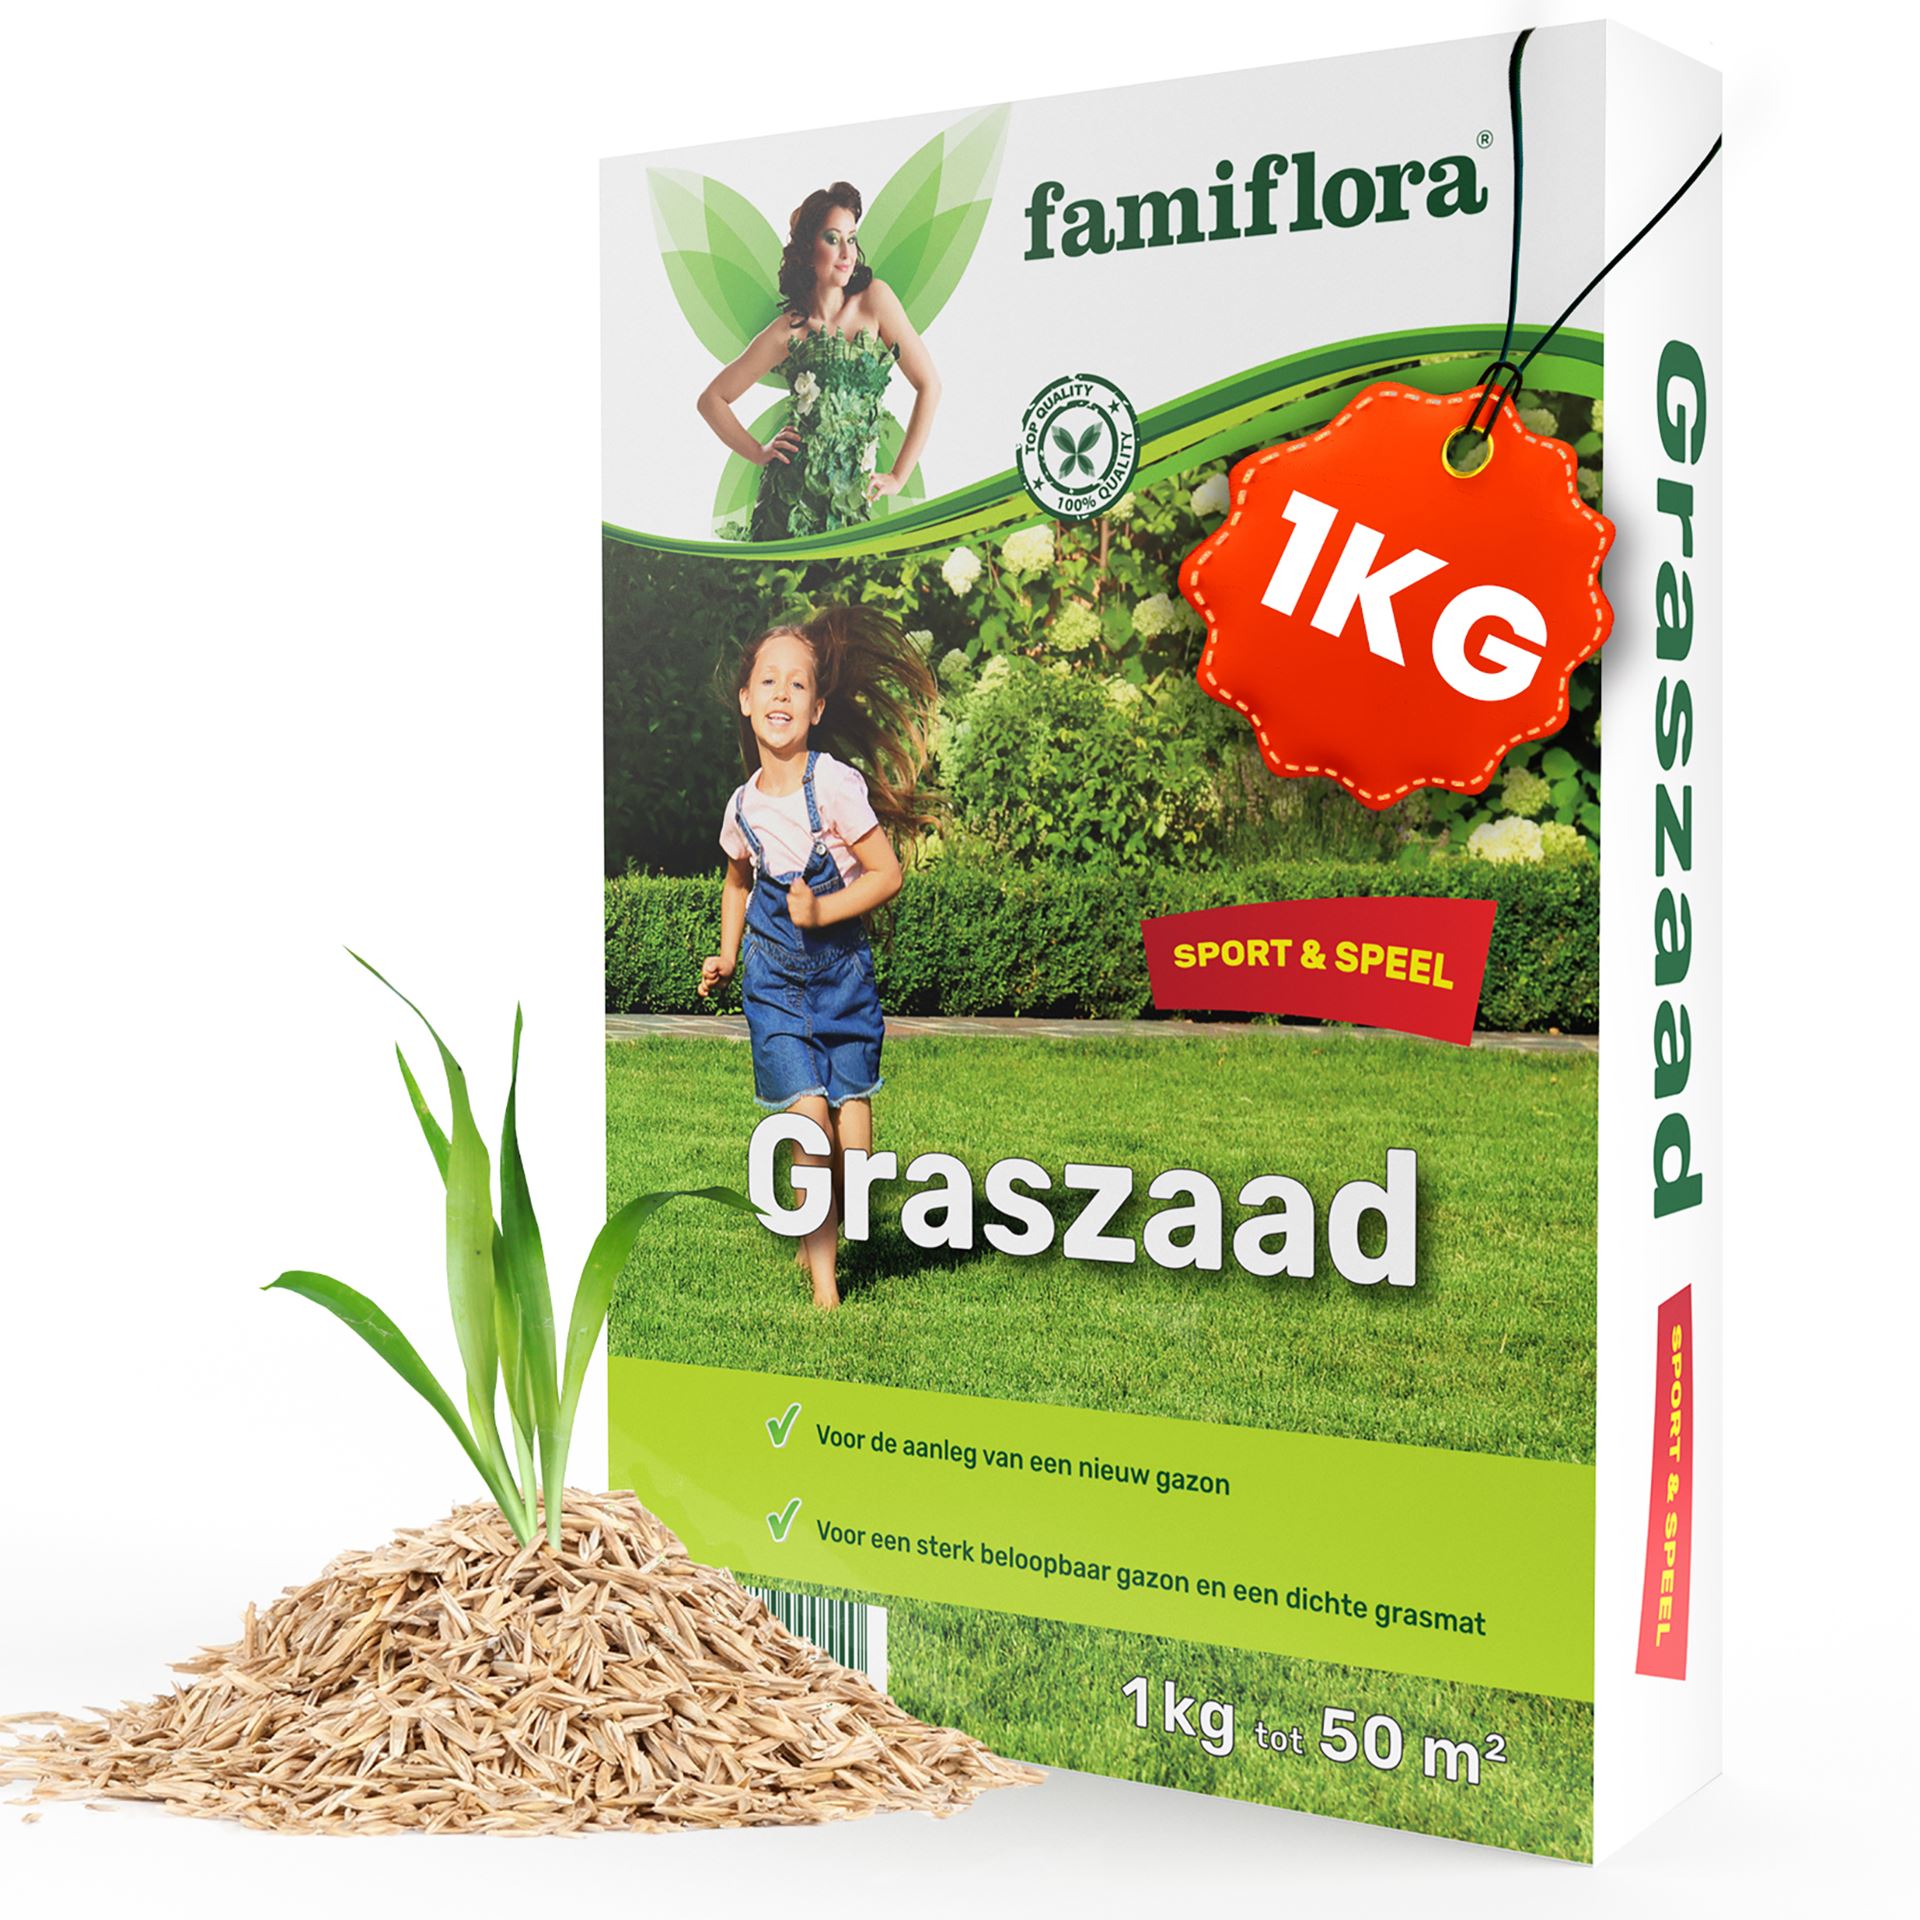 Famiflora graszaad Speel & Sport - voor aanleg nieuw gazon - 1kg tot 50m²